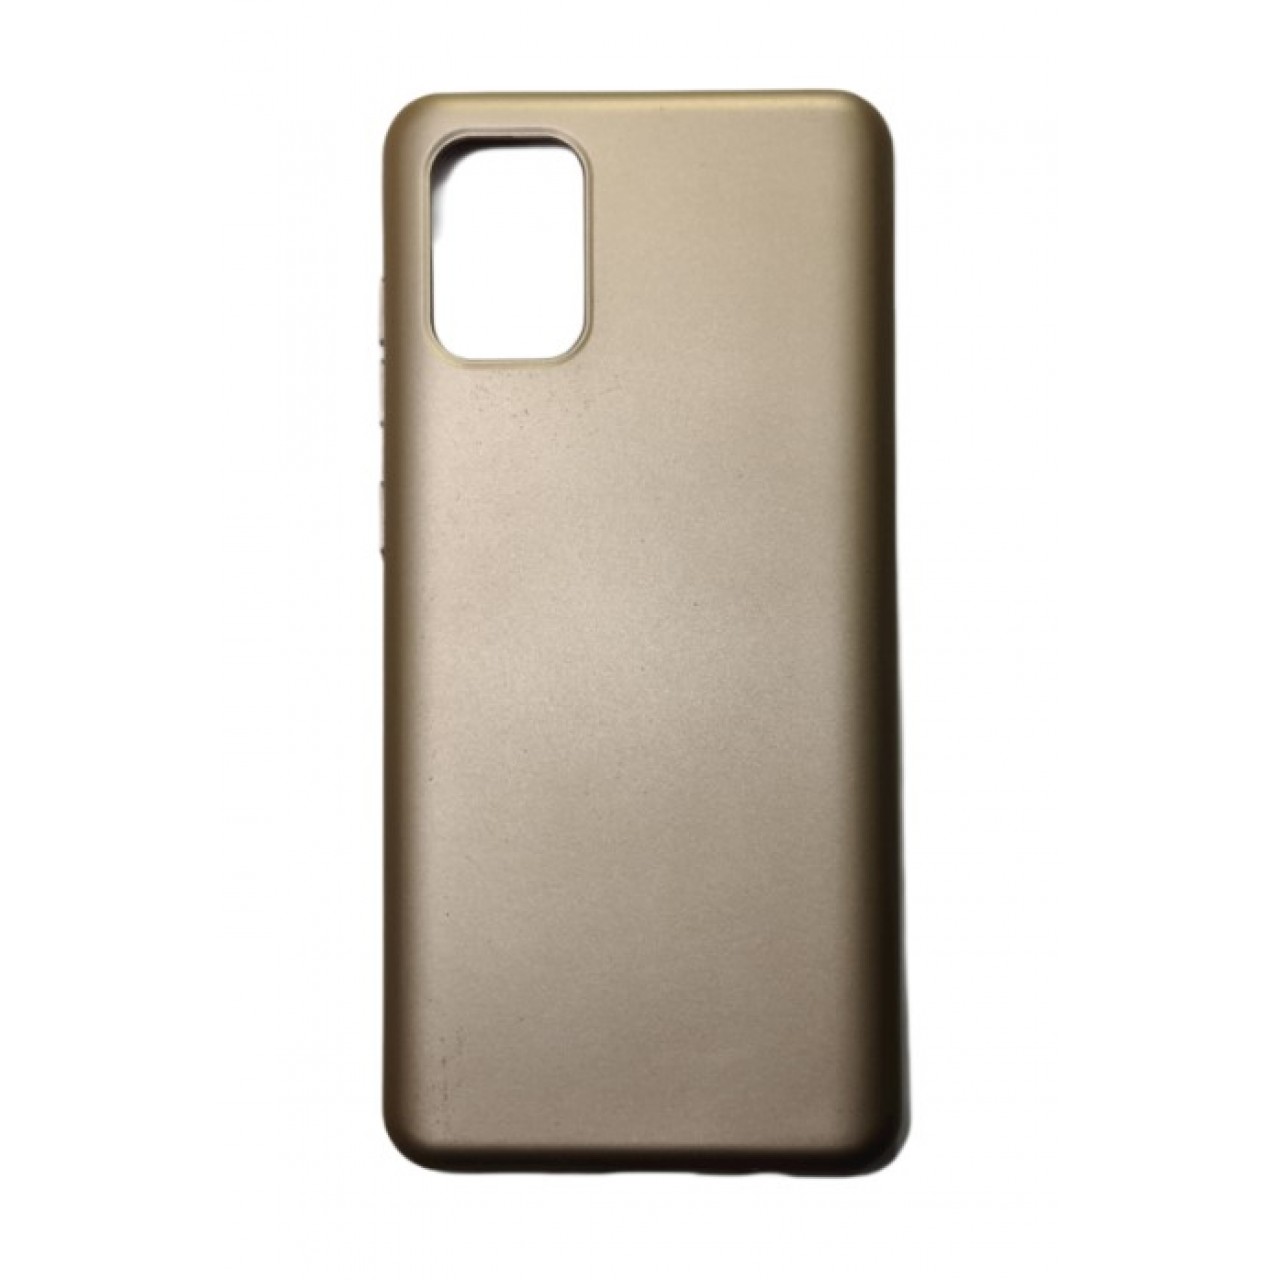 Θήκη Samsung Galaxy S20 Silicone soft-touch cover - 5090 - Χρυσό - ΟΕΜ